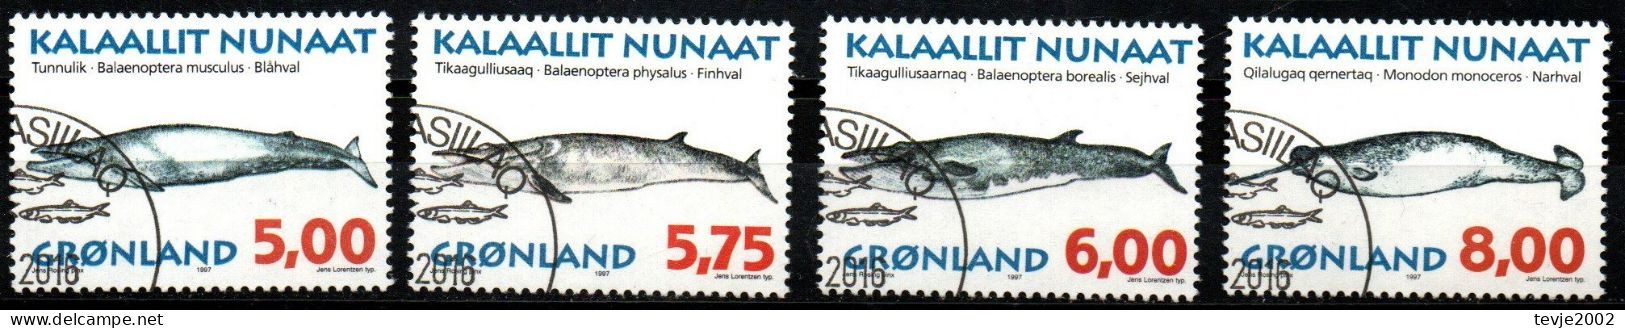 Grönland 1997 - Mi.Nr. 305 - 308 Y - Gestempelt Used - Tiere Animals Wale Whales - Gebraucht